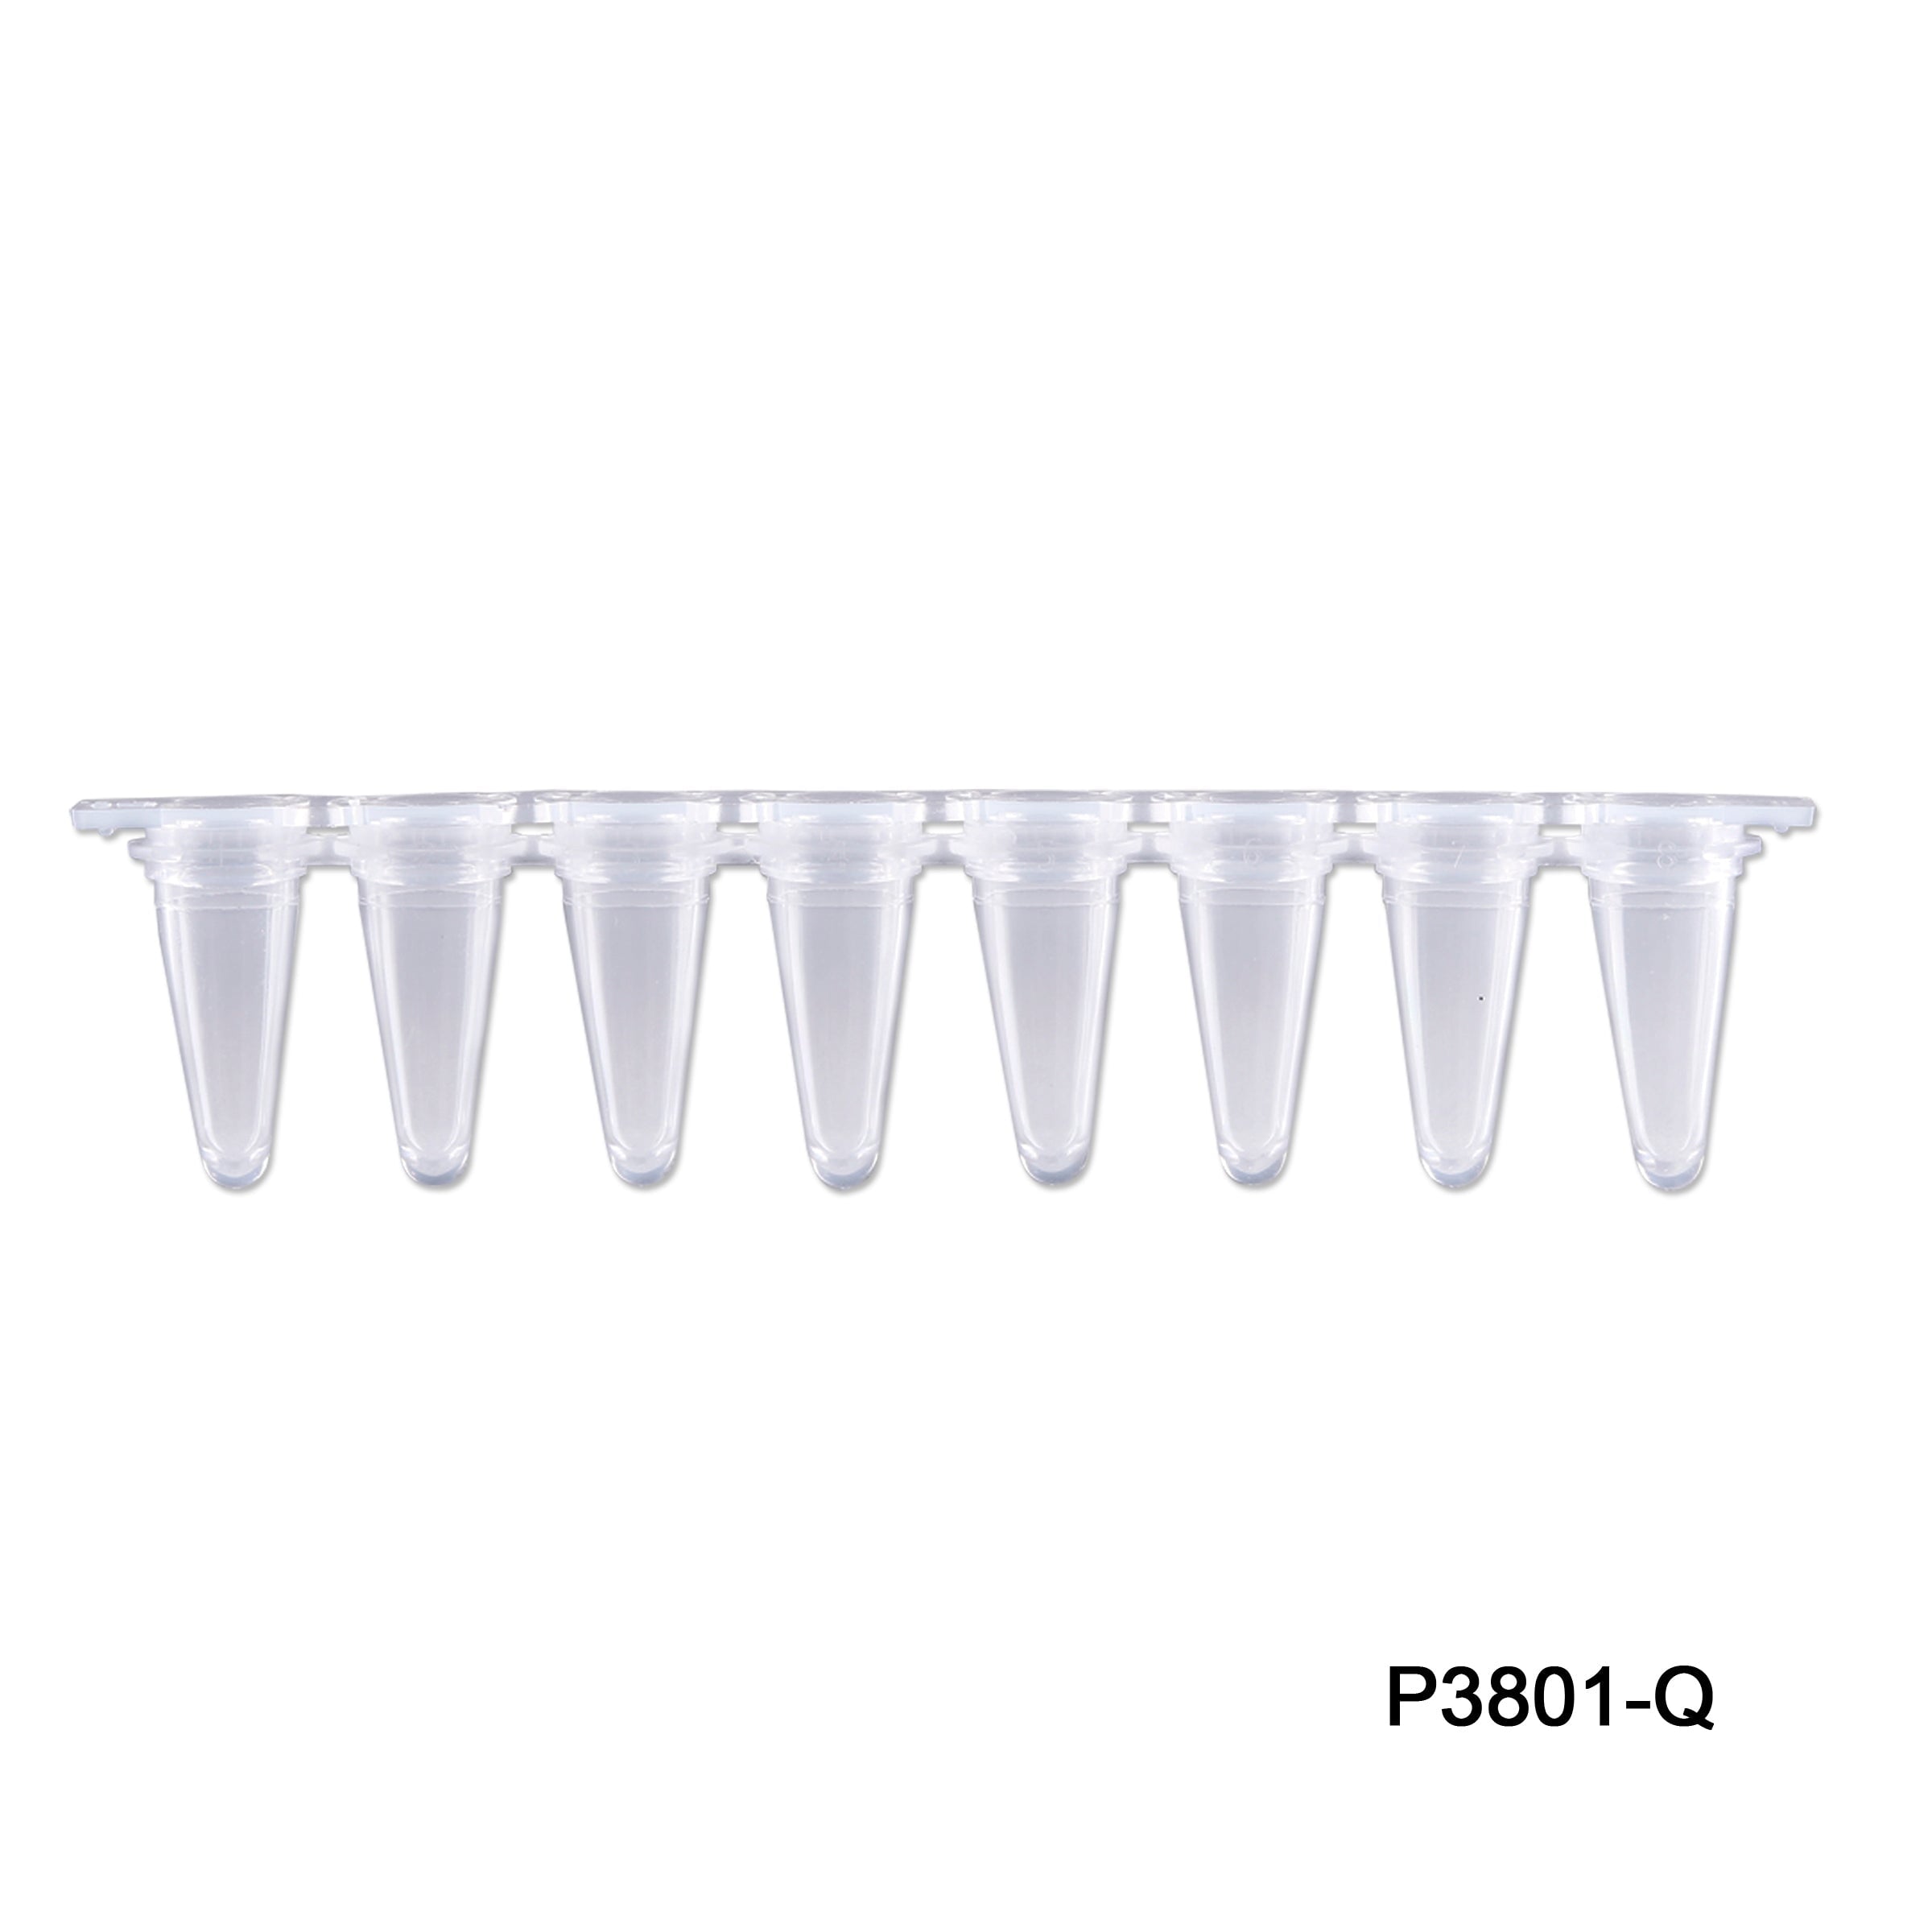 MTC Bio P3801-Q PureAmp 8-Strip qPCR Tubes, 0.1mL, Clear, Separate Optical Strip Caps, Pack of 120